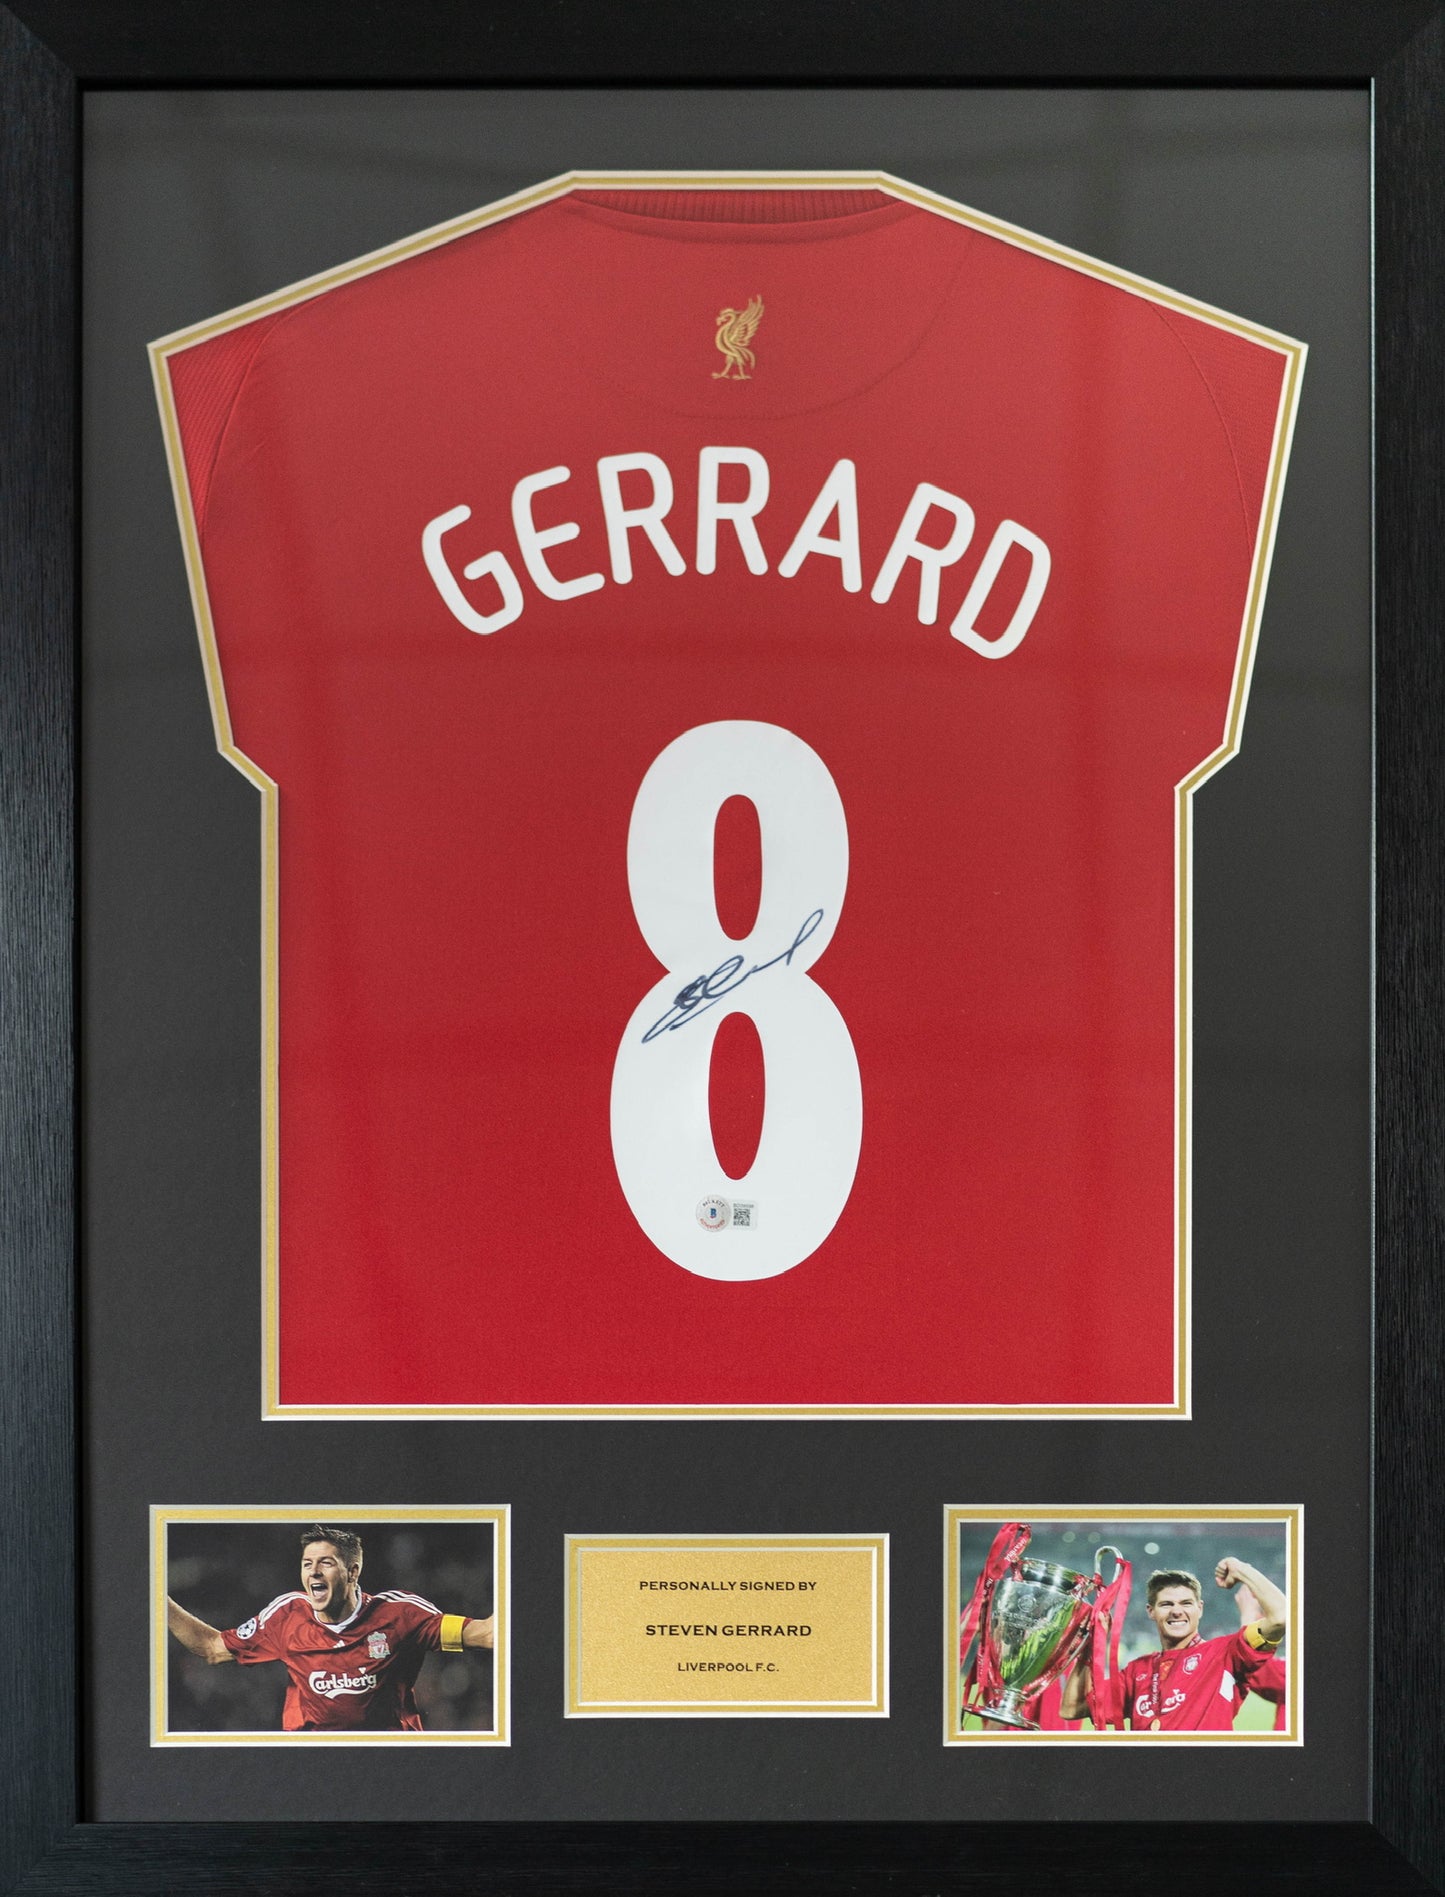 謝拉特 Steven Gerrard 利物浦主場球衣裱框 (背簽)